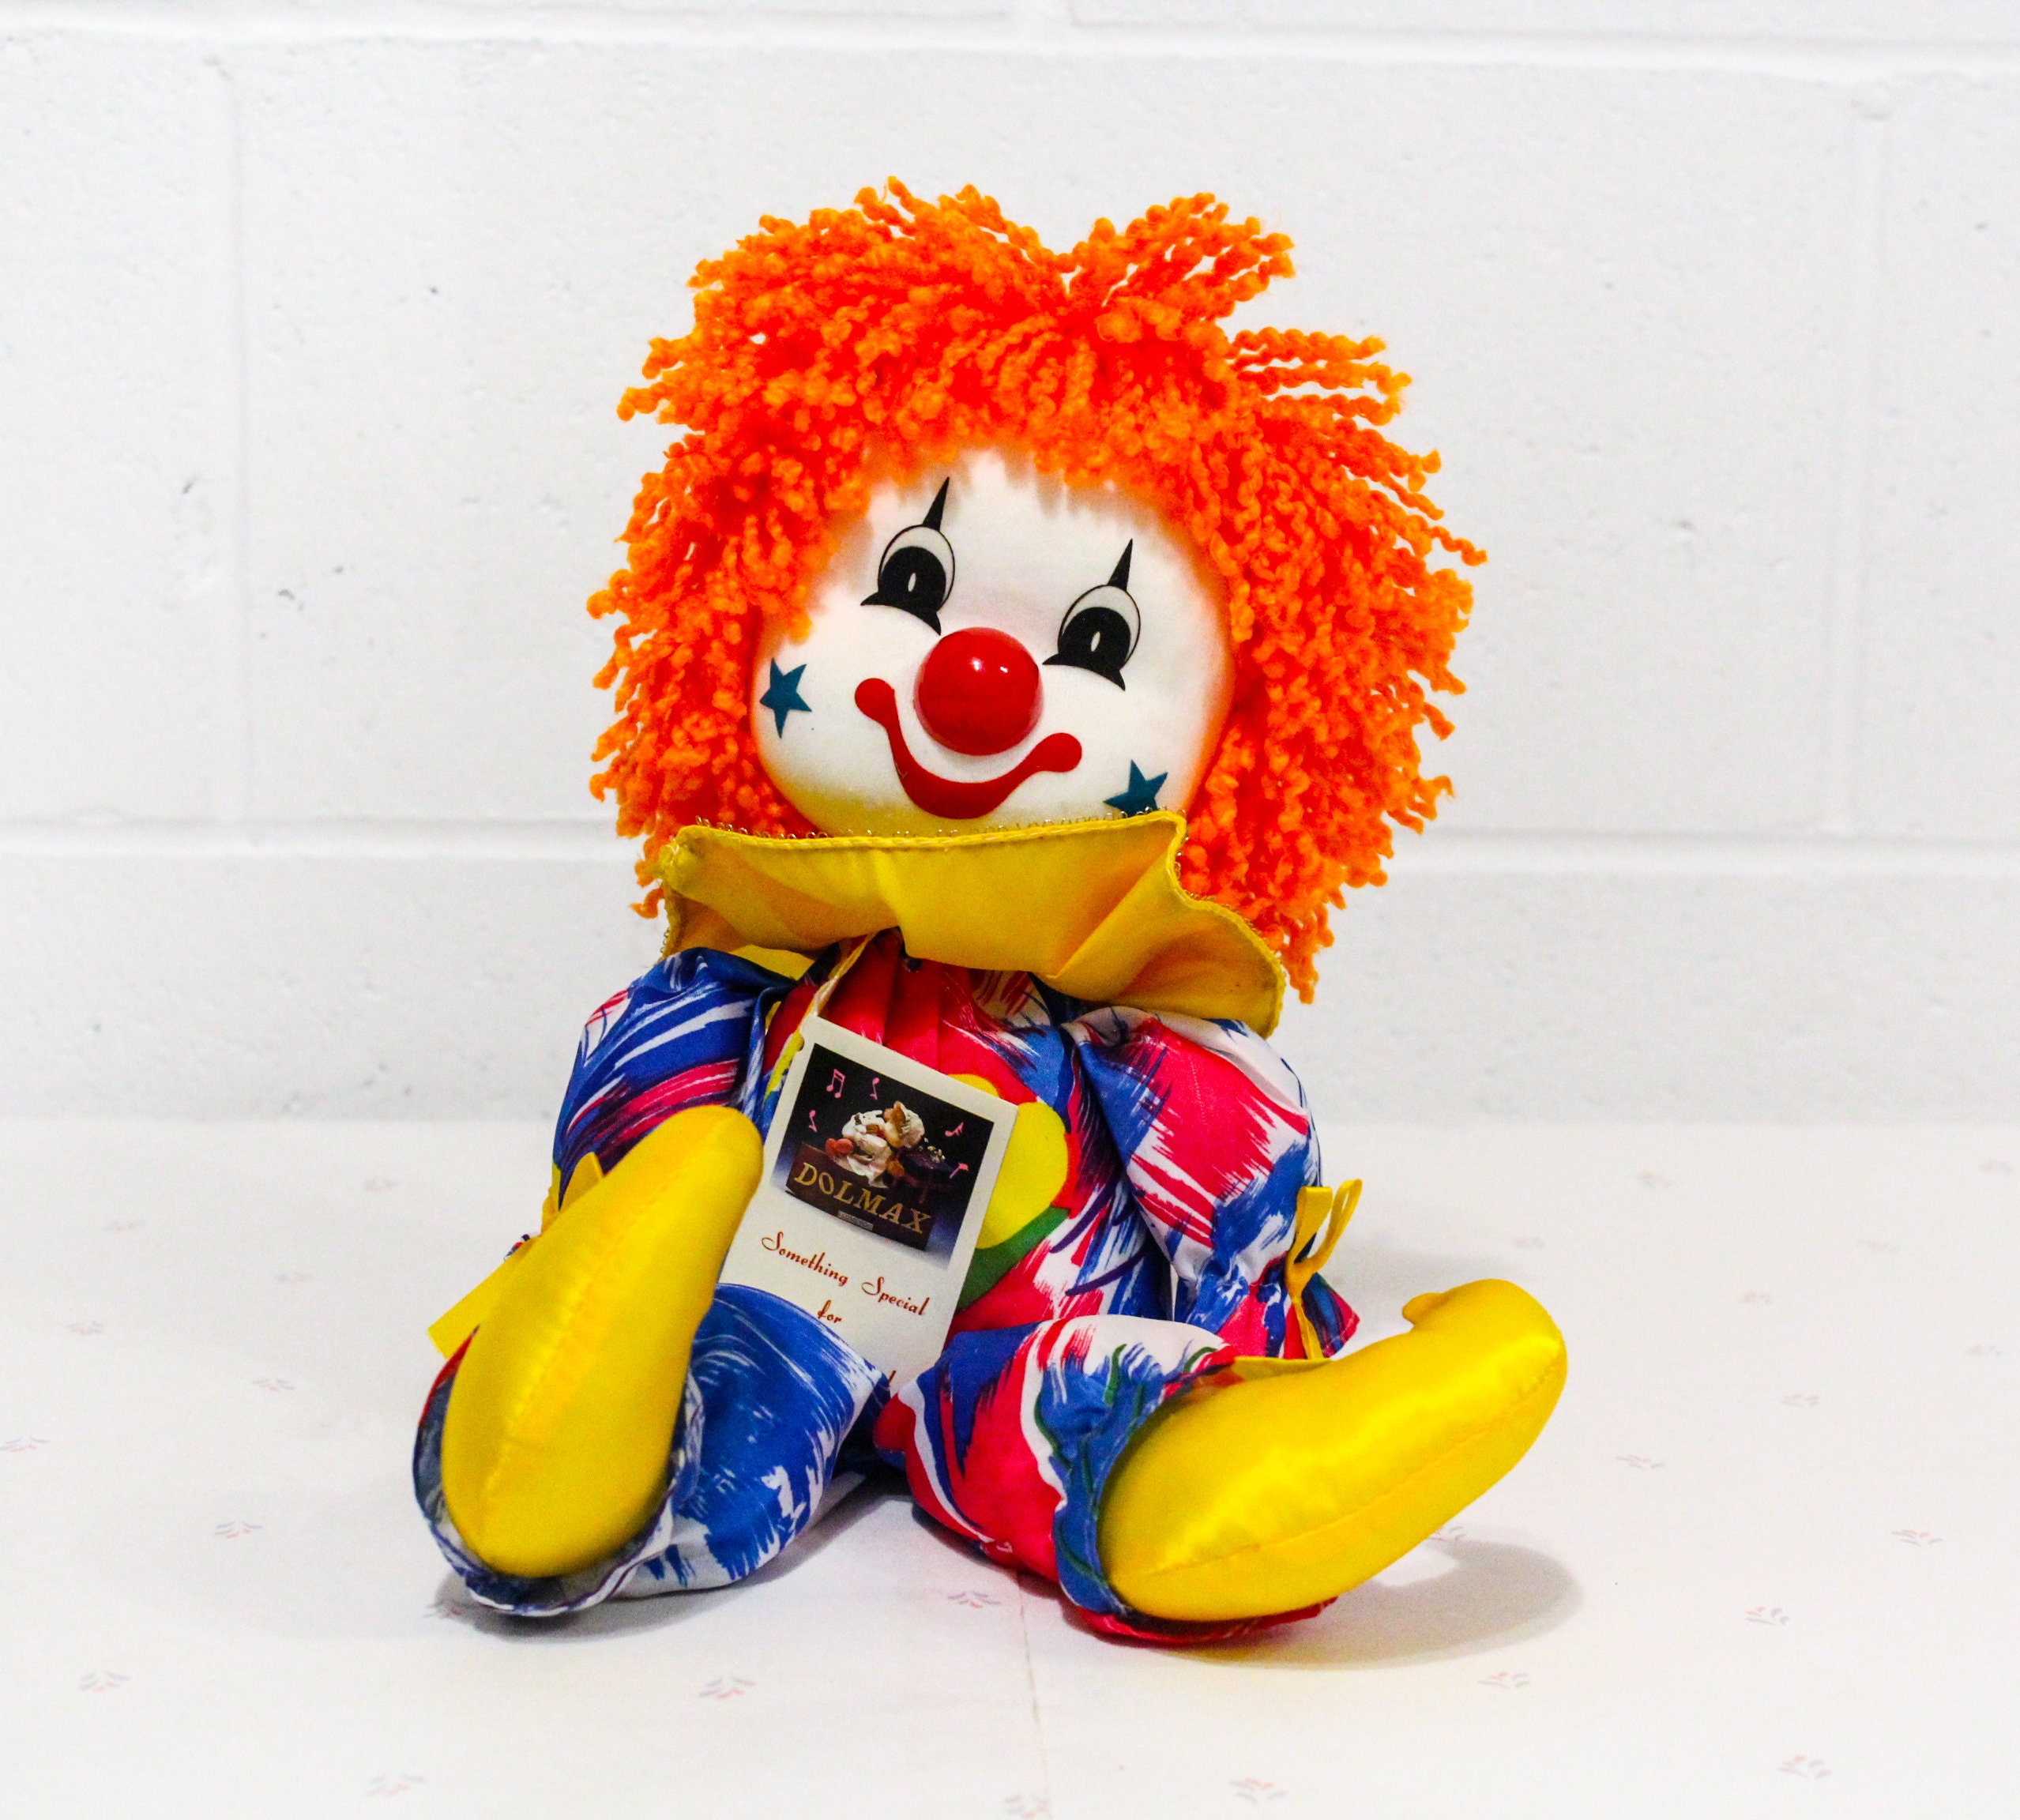 Музыкальная игрушка клоун. Игрушка клоун со смехом. Клоун мягкая игрушка 90-х. Кукла клоун восьмидесятых. Музыкальные клоуны